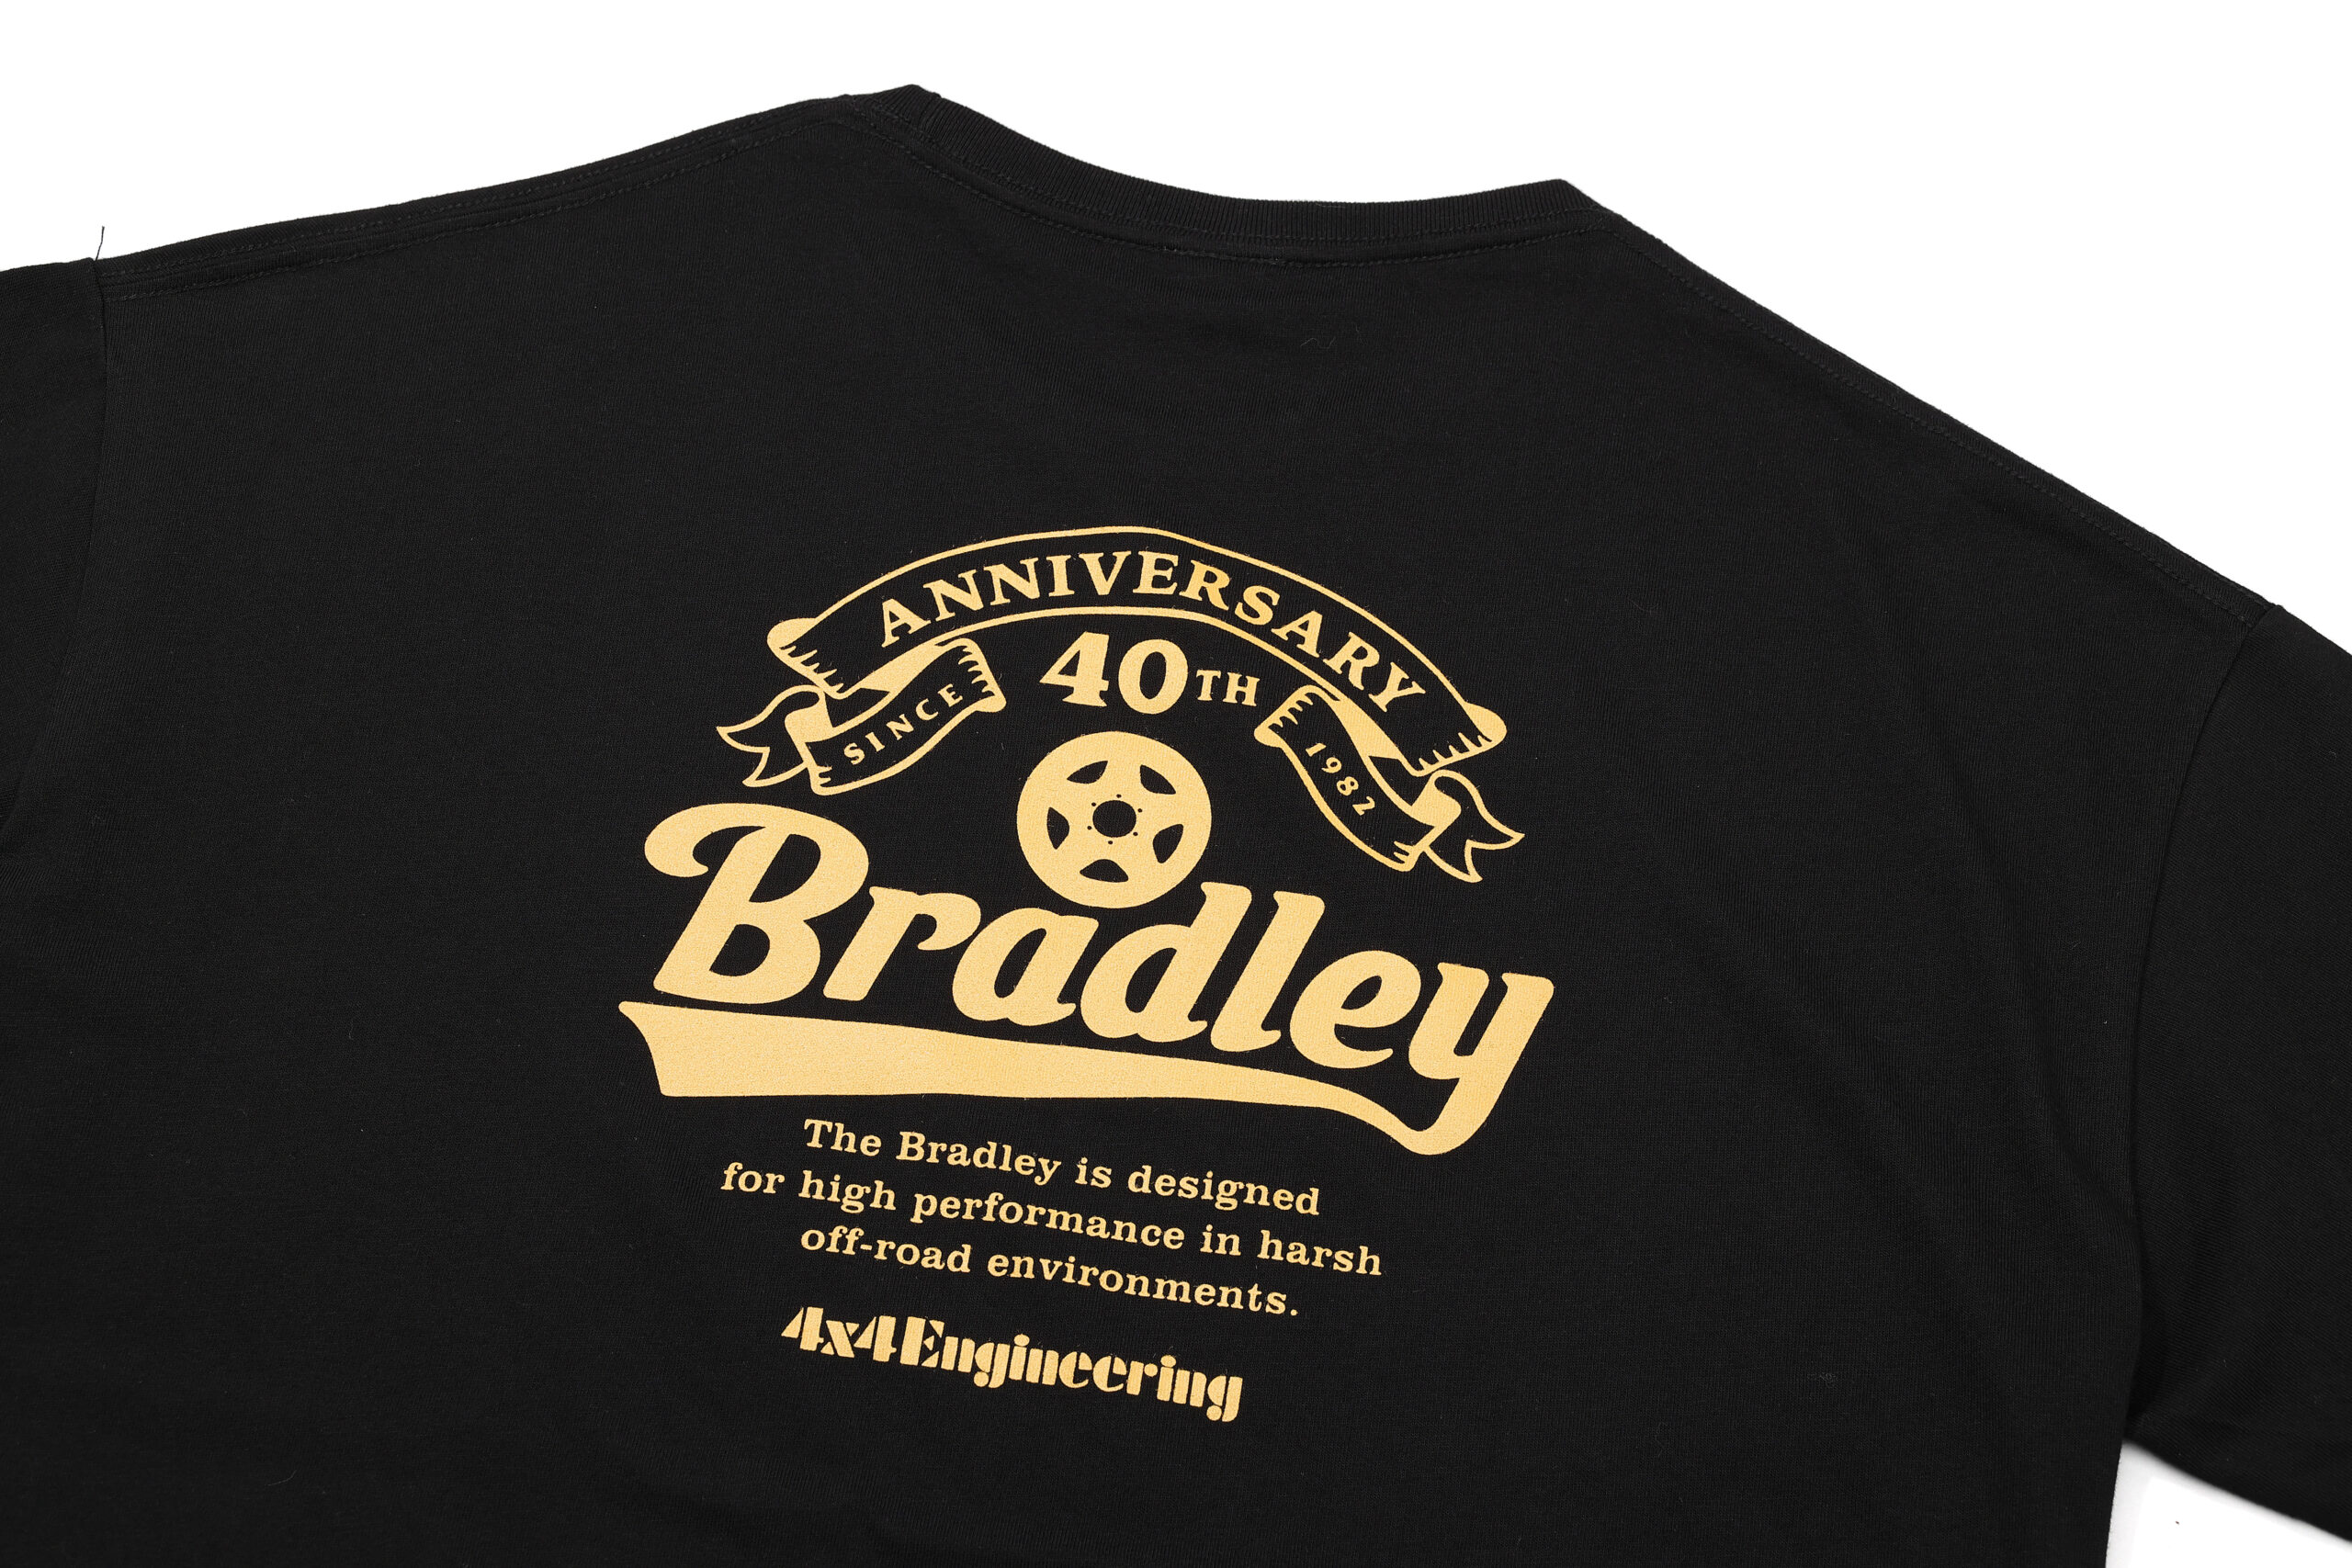 Bradley 生誕40周年記念グッズのtシャツが発売開始 フォーバイフォーエンジニアリングサービス 4x4 Engineering Service